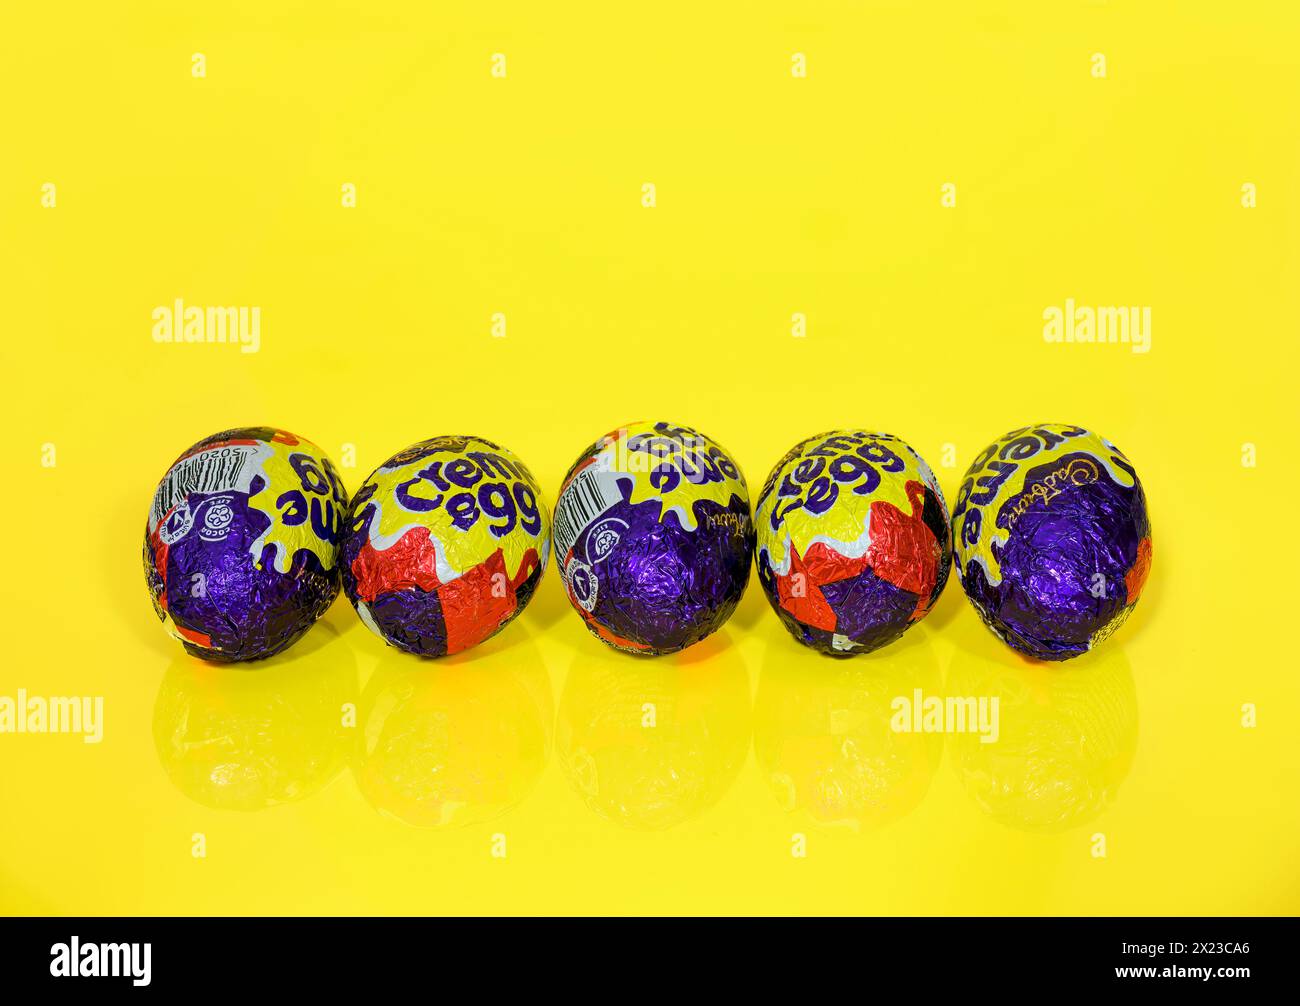 Cinq oeufs Cadbury Creme dans une rangée sur fond jaune, oeufs de Pâques Banque D'Images